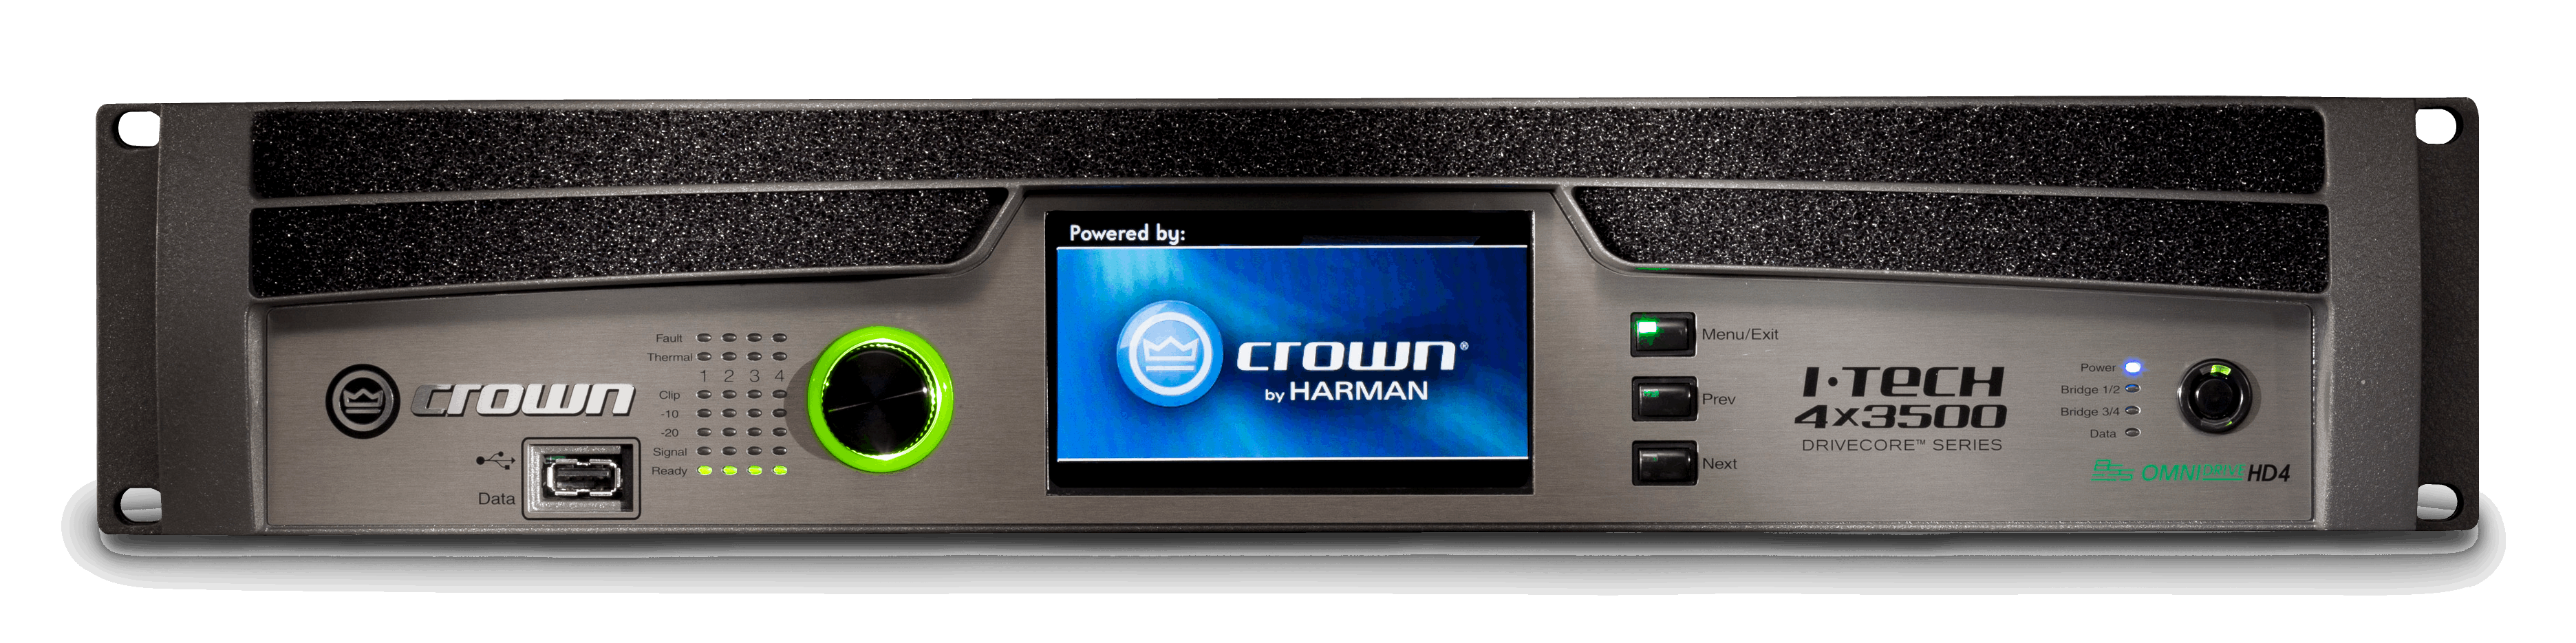 Crown I-Tech 4x3500HD Power Amplifier With Binding Posts ( ITech4x3500HD / IT4X3500HD BINDING )